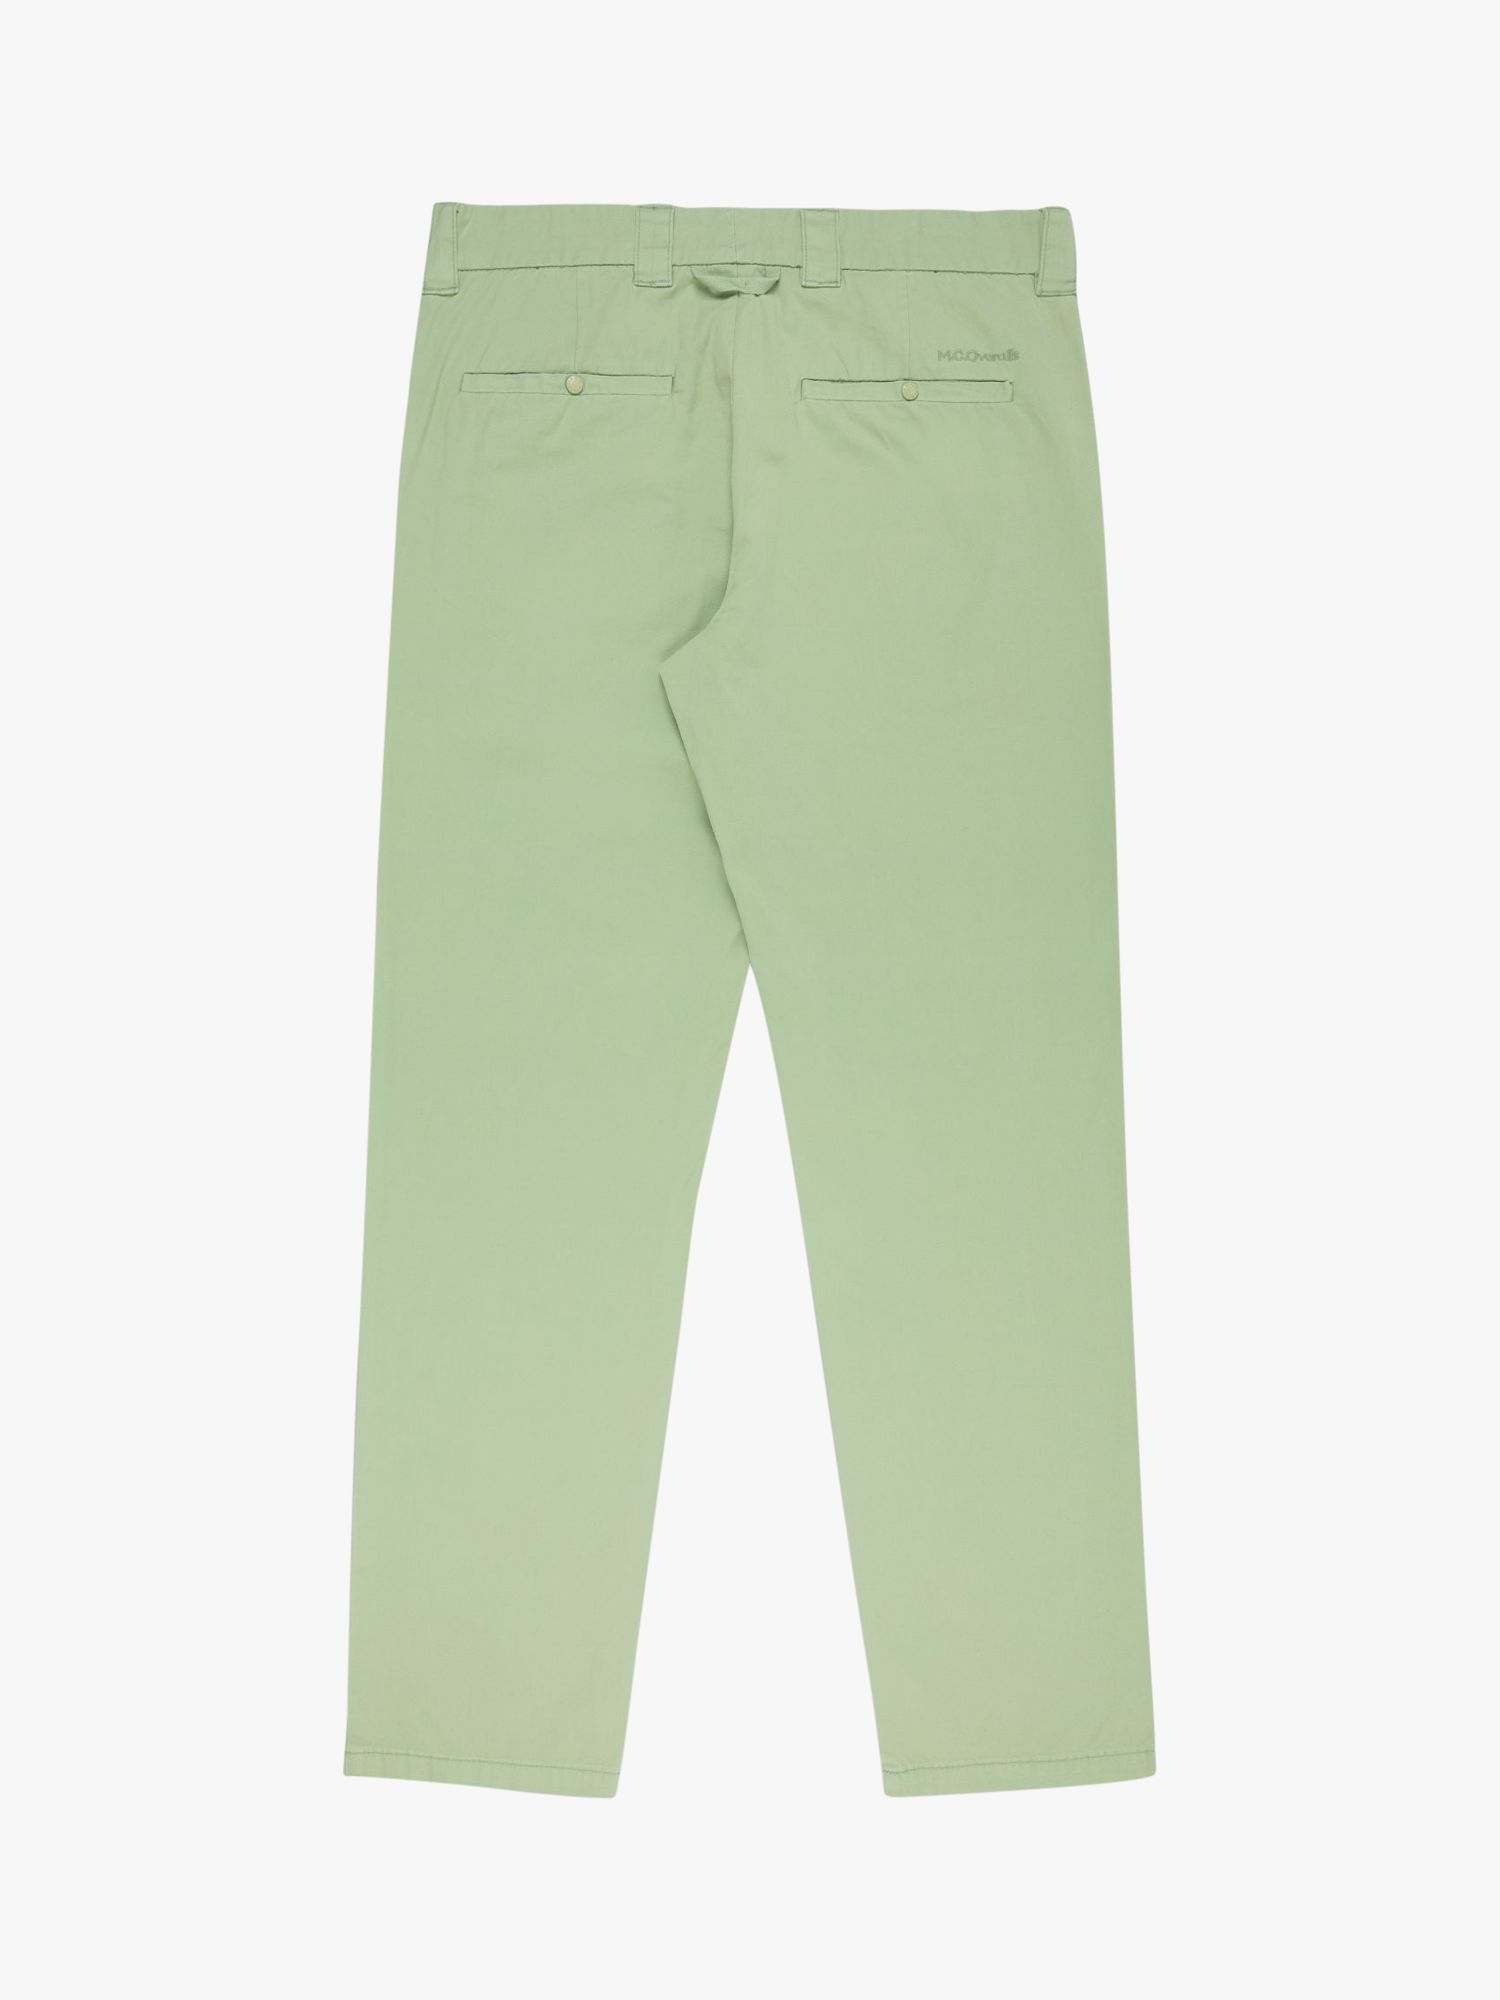 M.C.Overalls Slim Fit Lightweight Cotton Trousers, Dark Mint, W34/L34